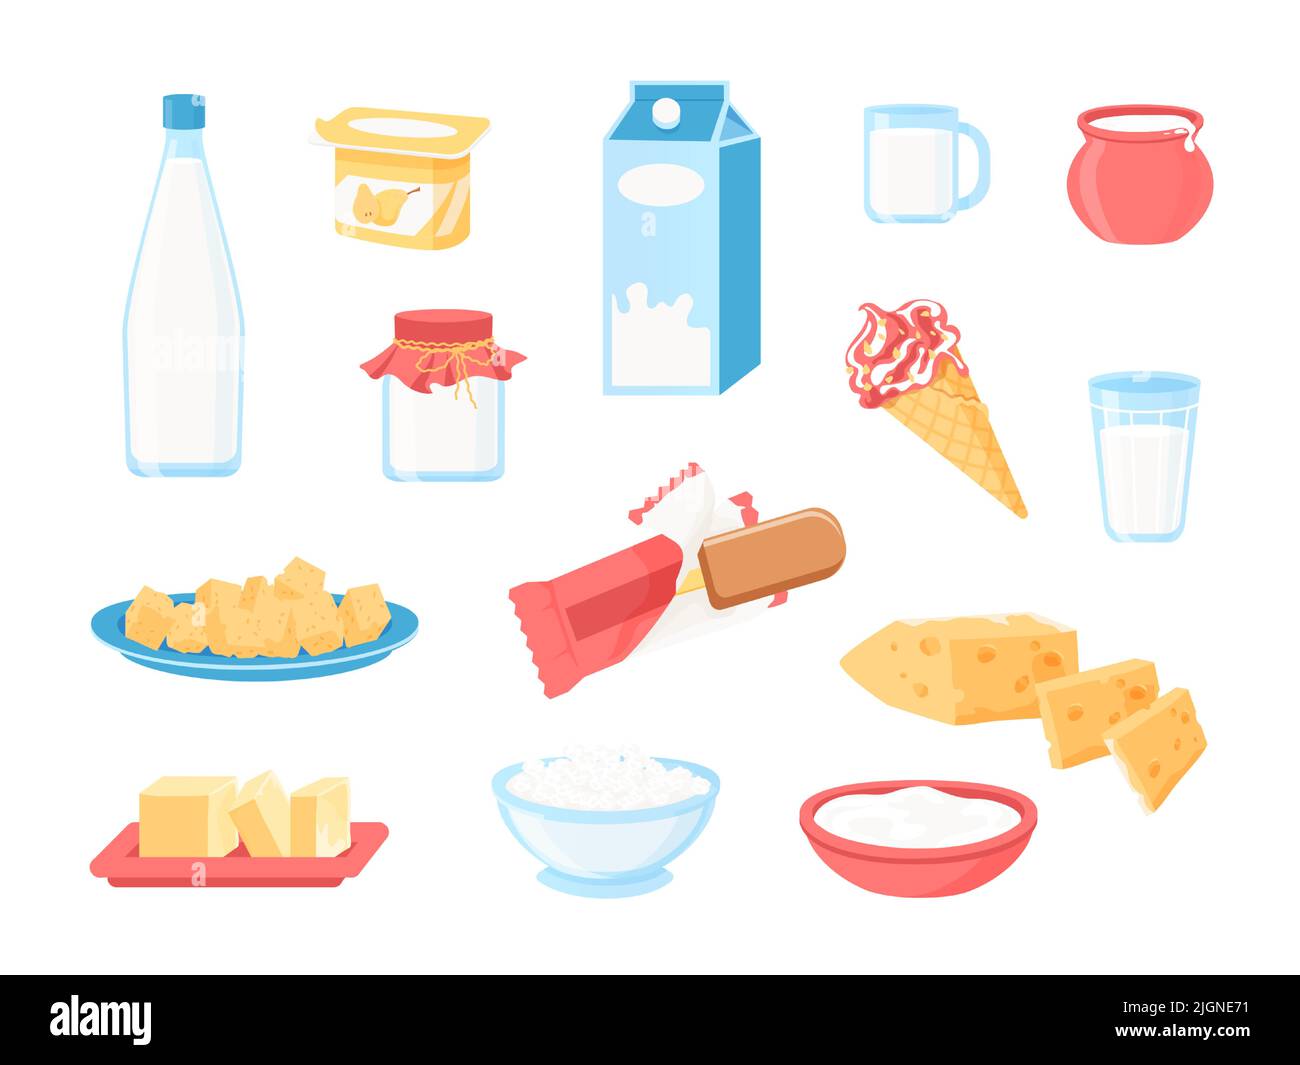 Milchprodukte. Cartoon Milch in Flasche, Packung und Glas, Käse Joghurt Eis Butter und Cremes, gesundes Frühstück Mahlzeit. Vector Milcherzeugnisse Stock Vektor